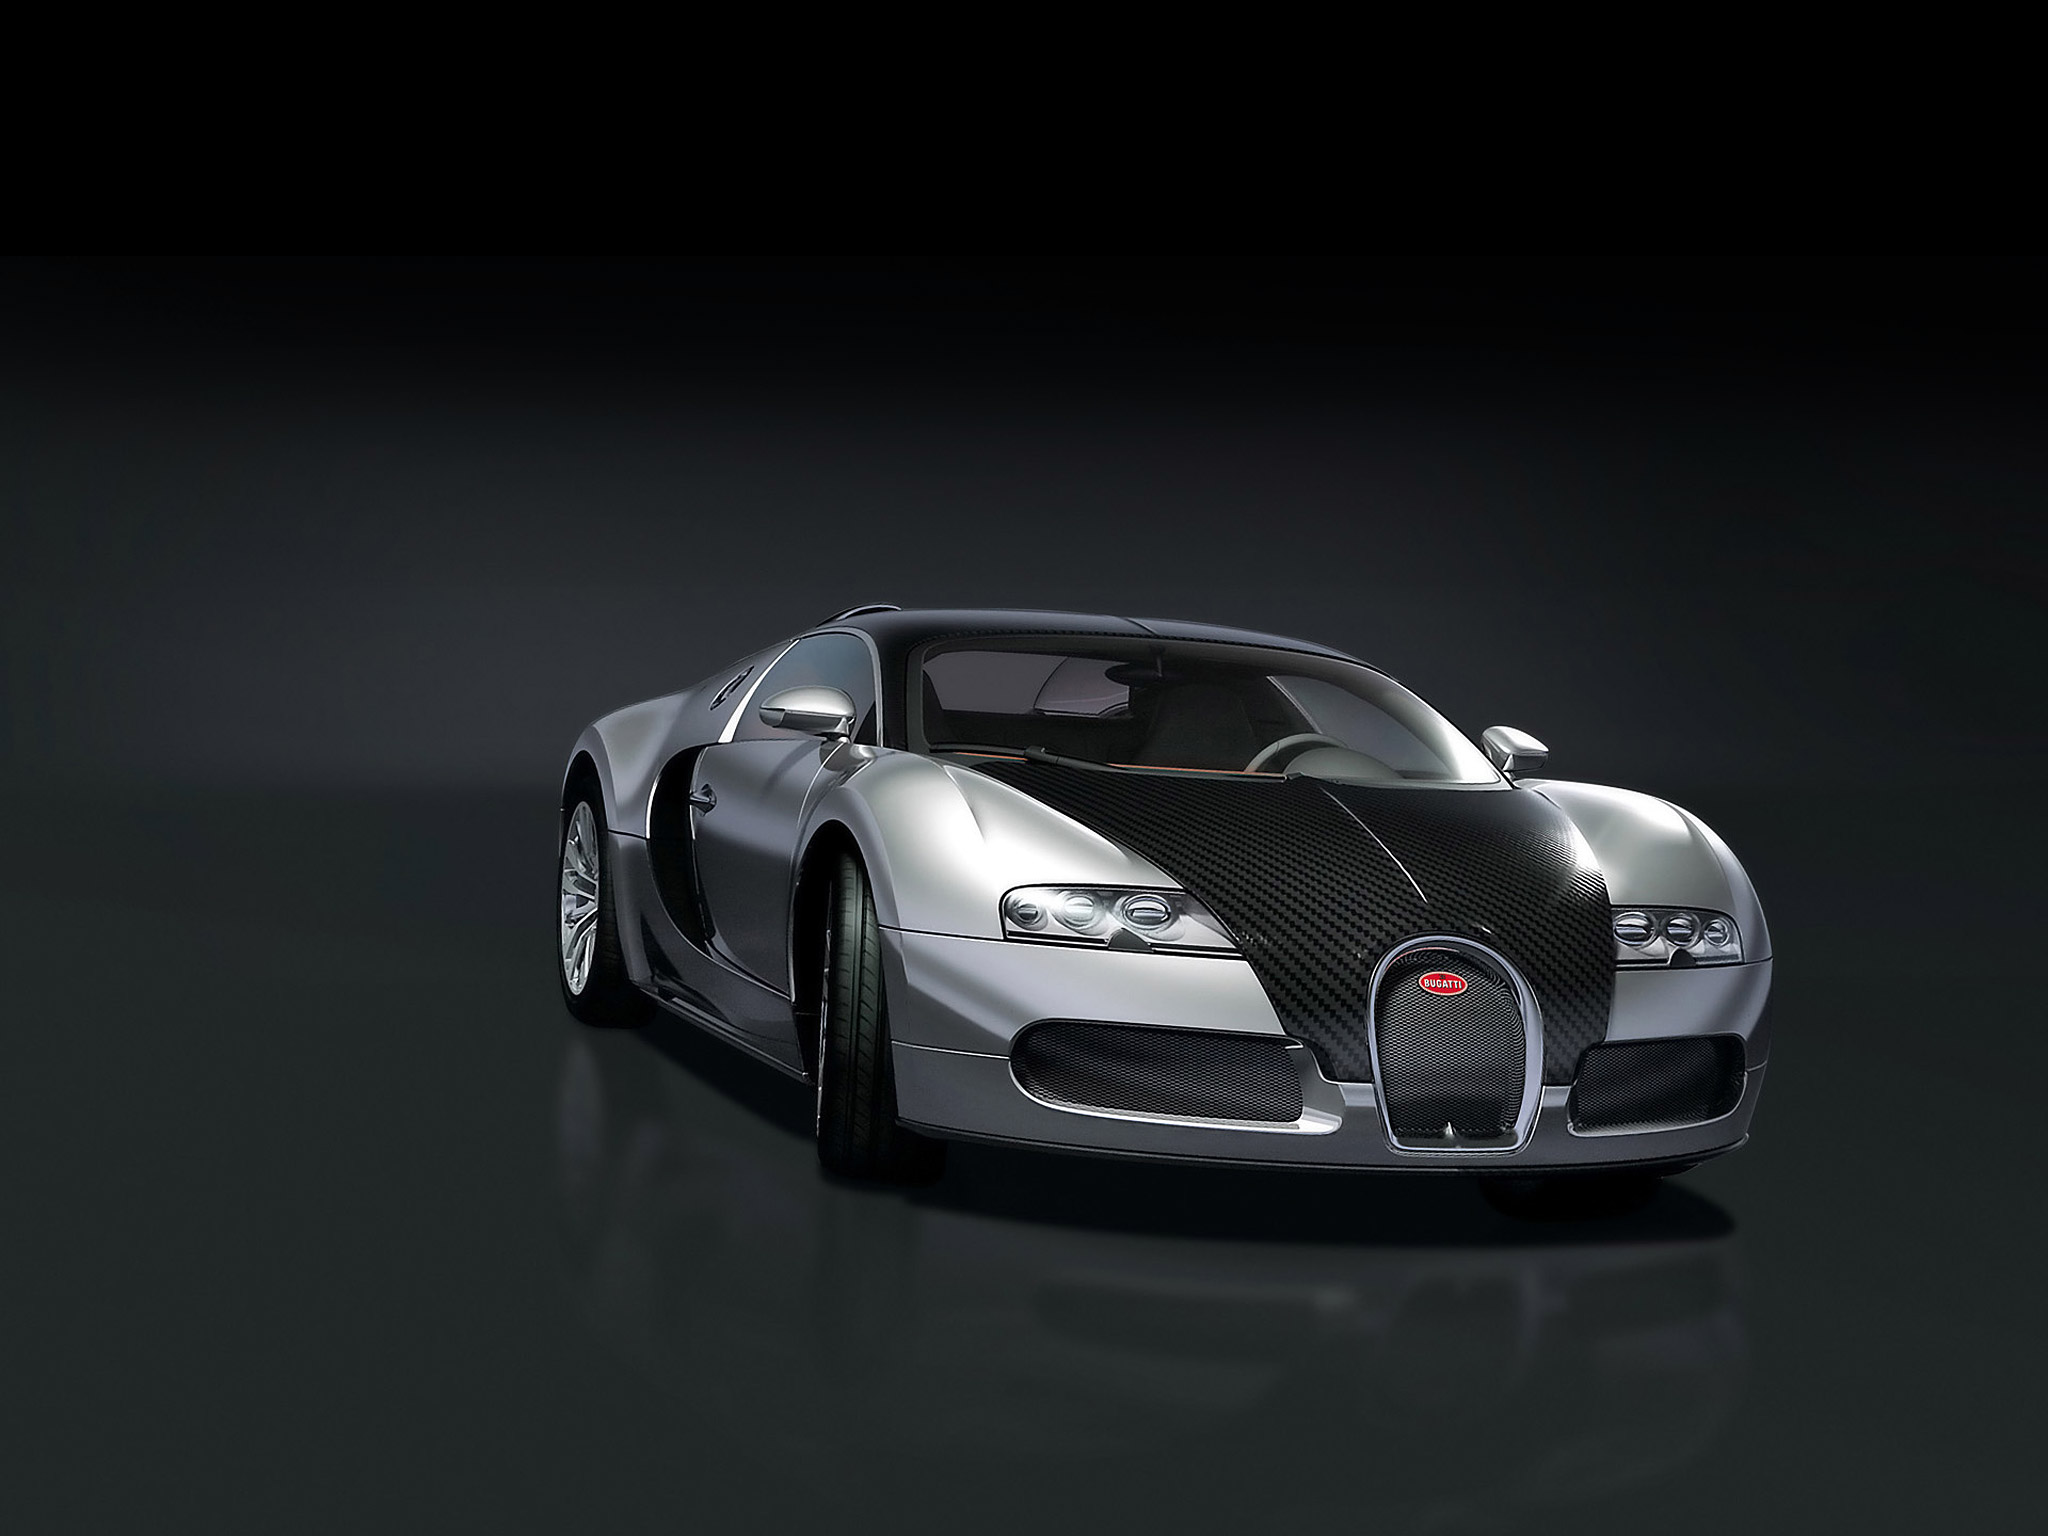 Meilleurs fonds d'écran Bugatti Veyron 16 4 Pur Sang pour l'écran du téléphone